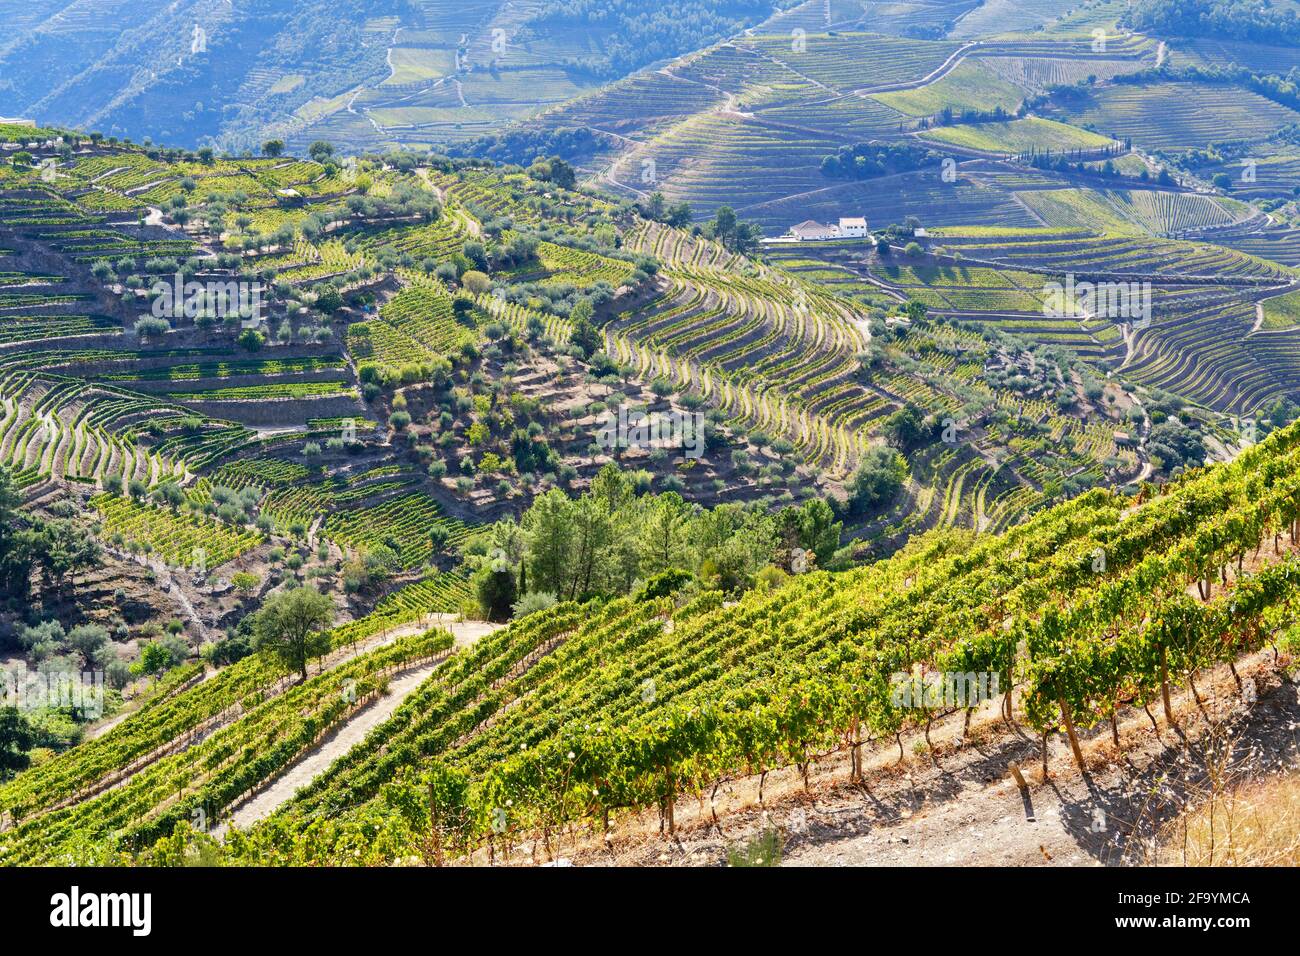 Vale de Mendiz, ein Tal, das sich entlang der Straße von Alijo nach Pinhao erstreckt, ist voll von Weinbergen, in denen der weltberühmte Portwein und der Douro-Wein hergestellt werden. Stockfoto